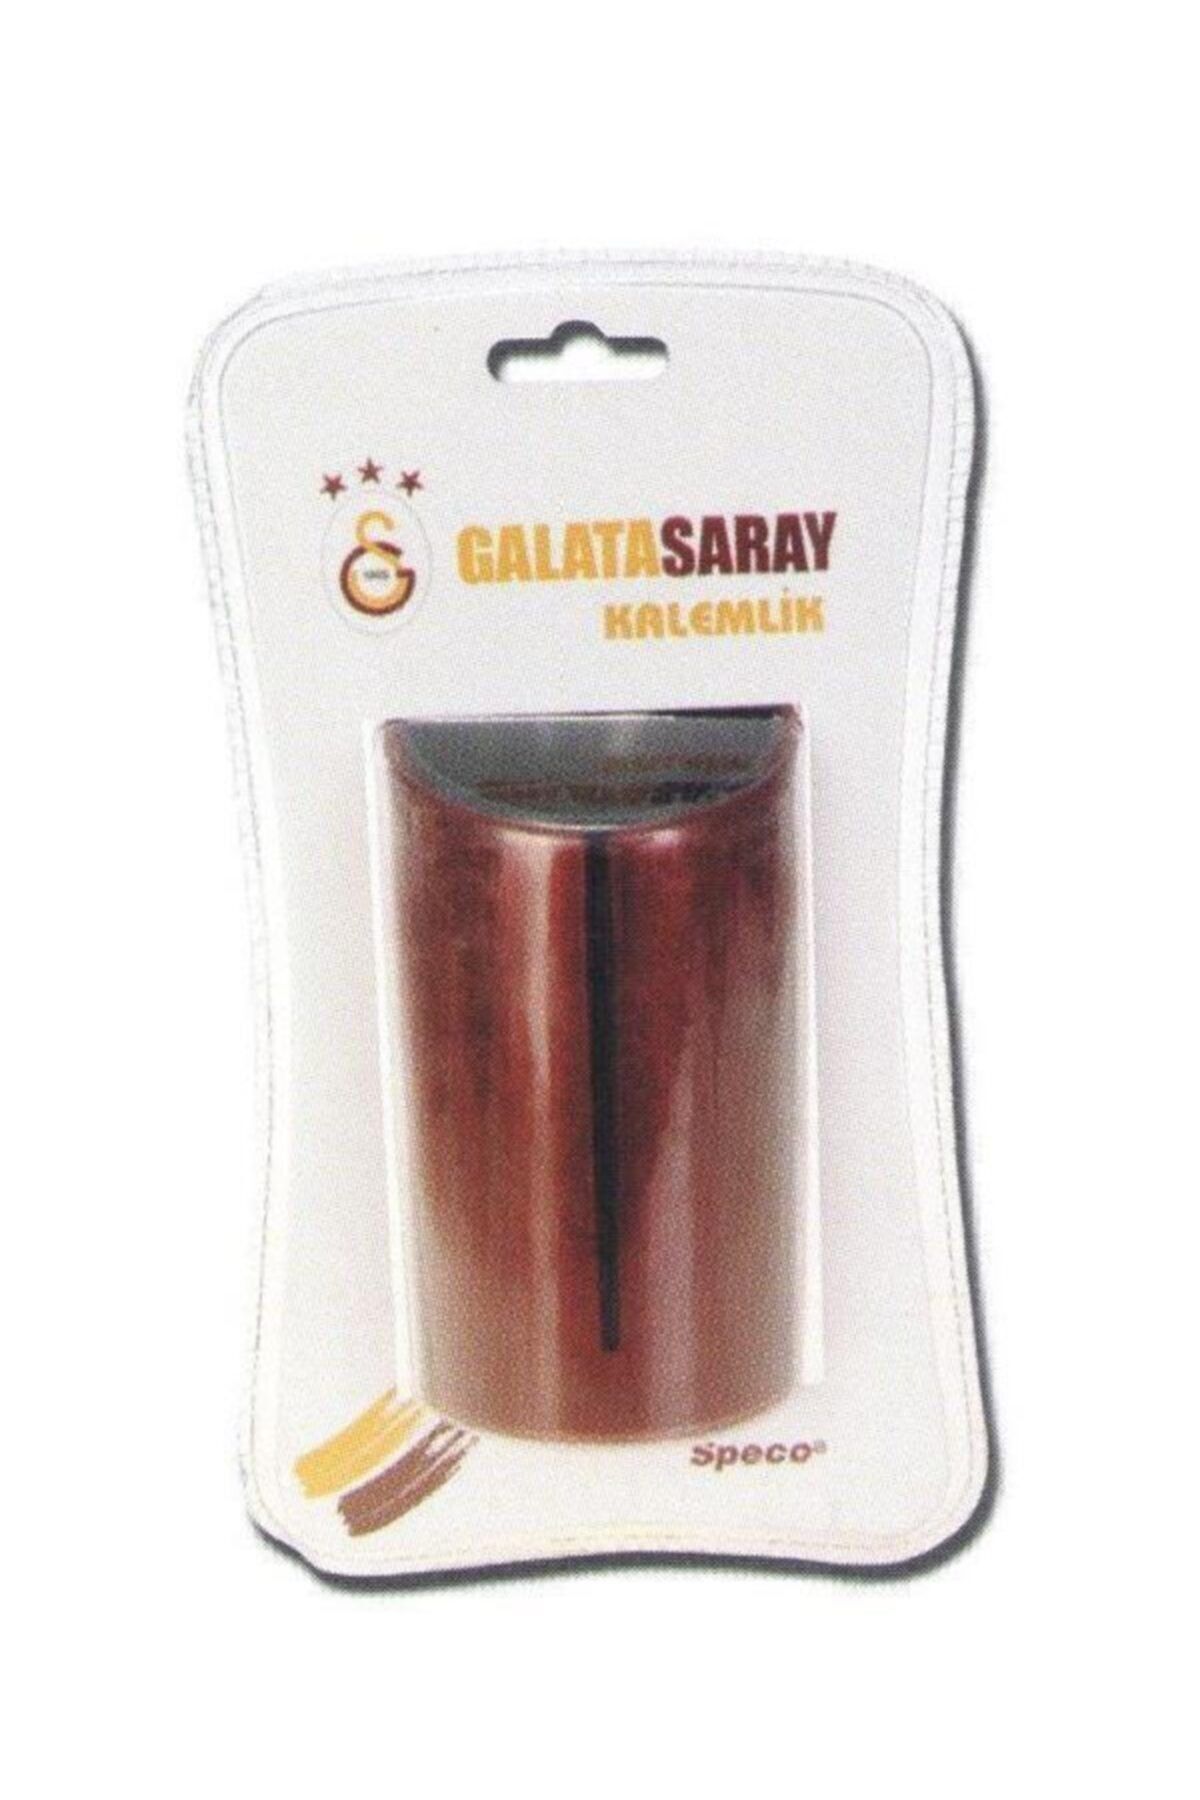 Galatasaray 37145 Galatasaray Lisanslı Masaüstü Kalemlik